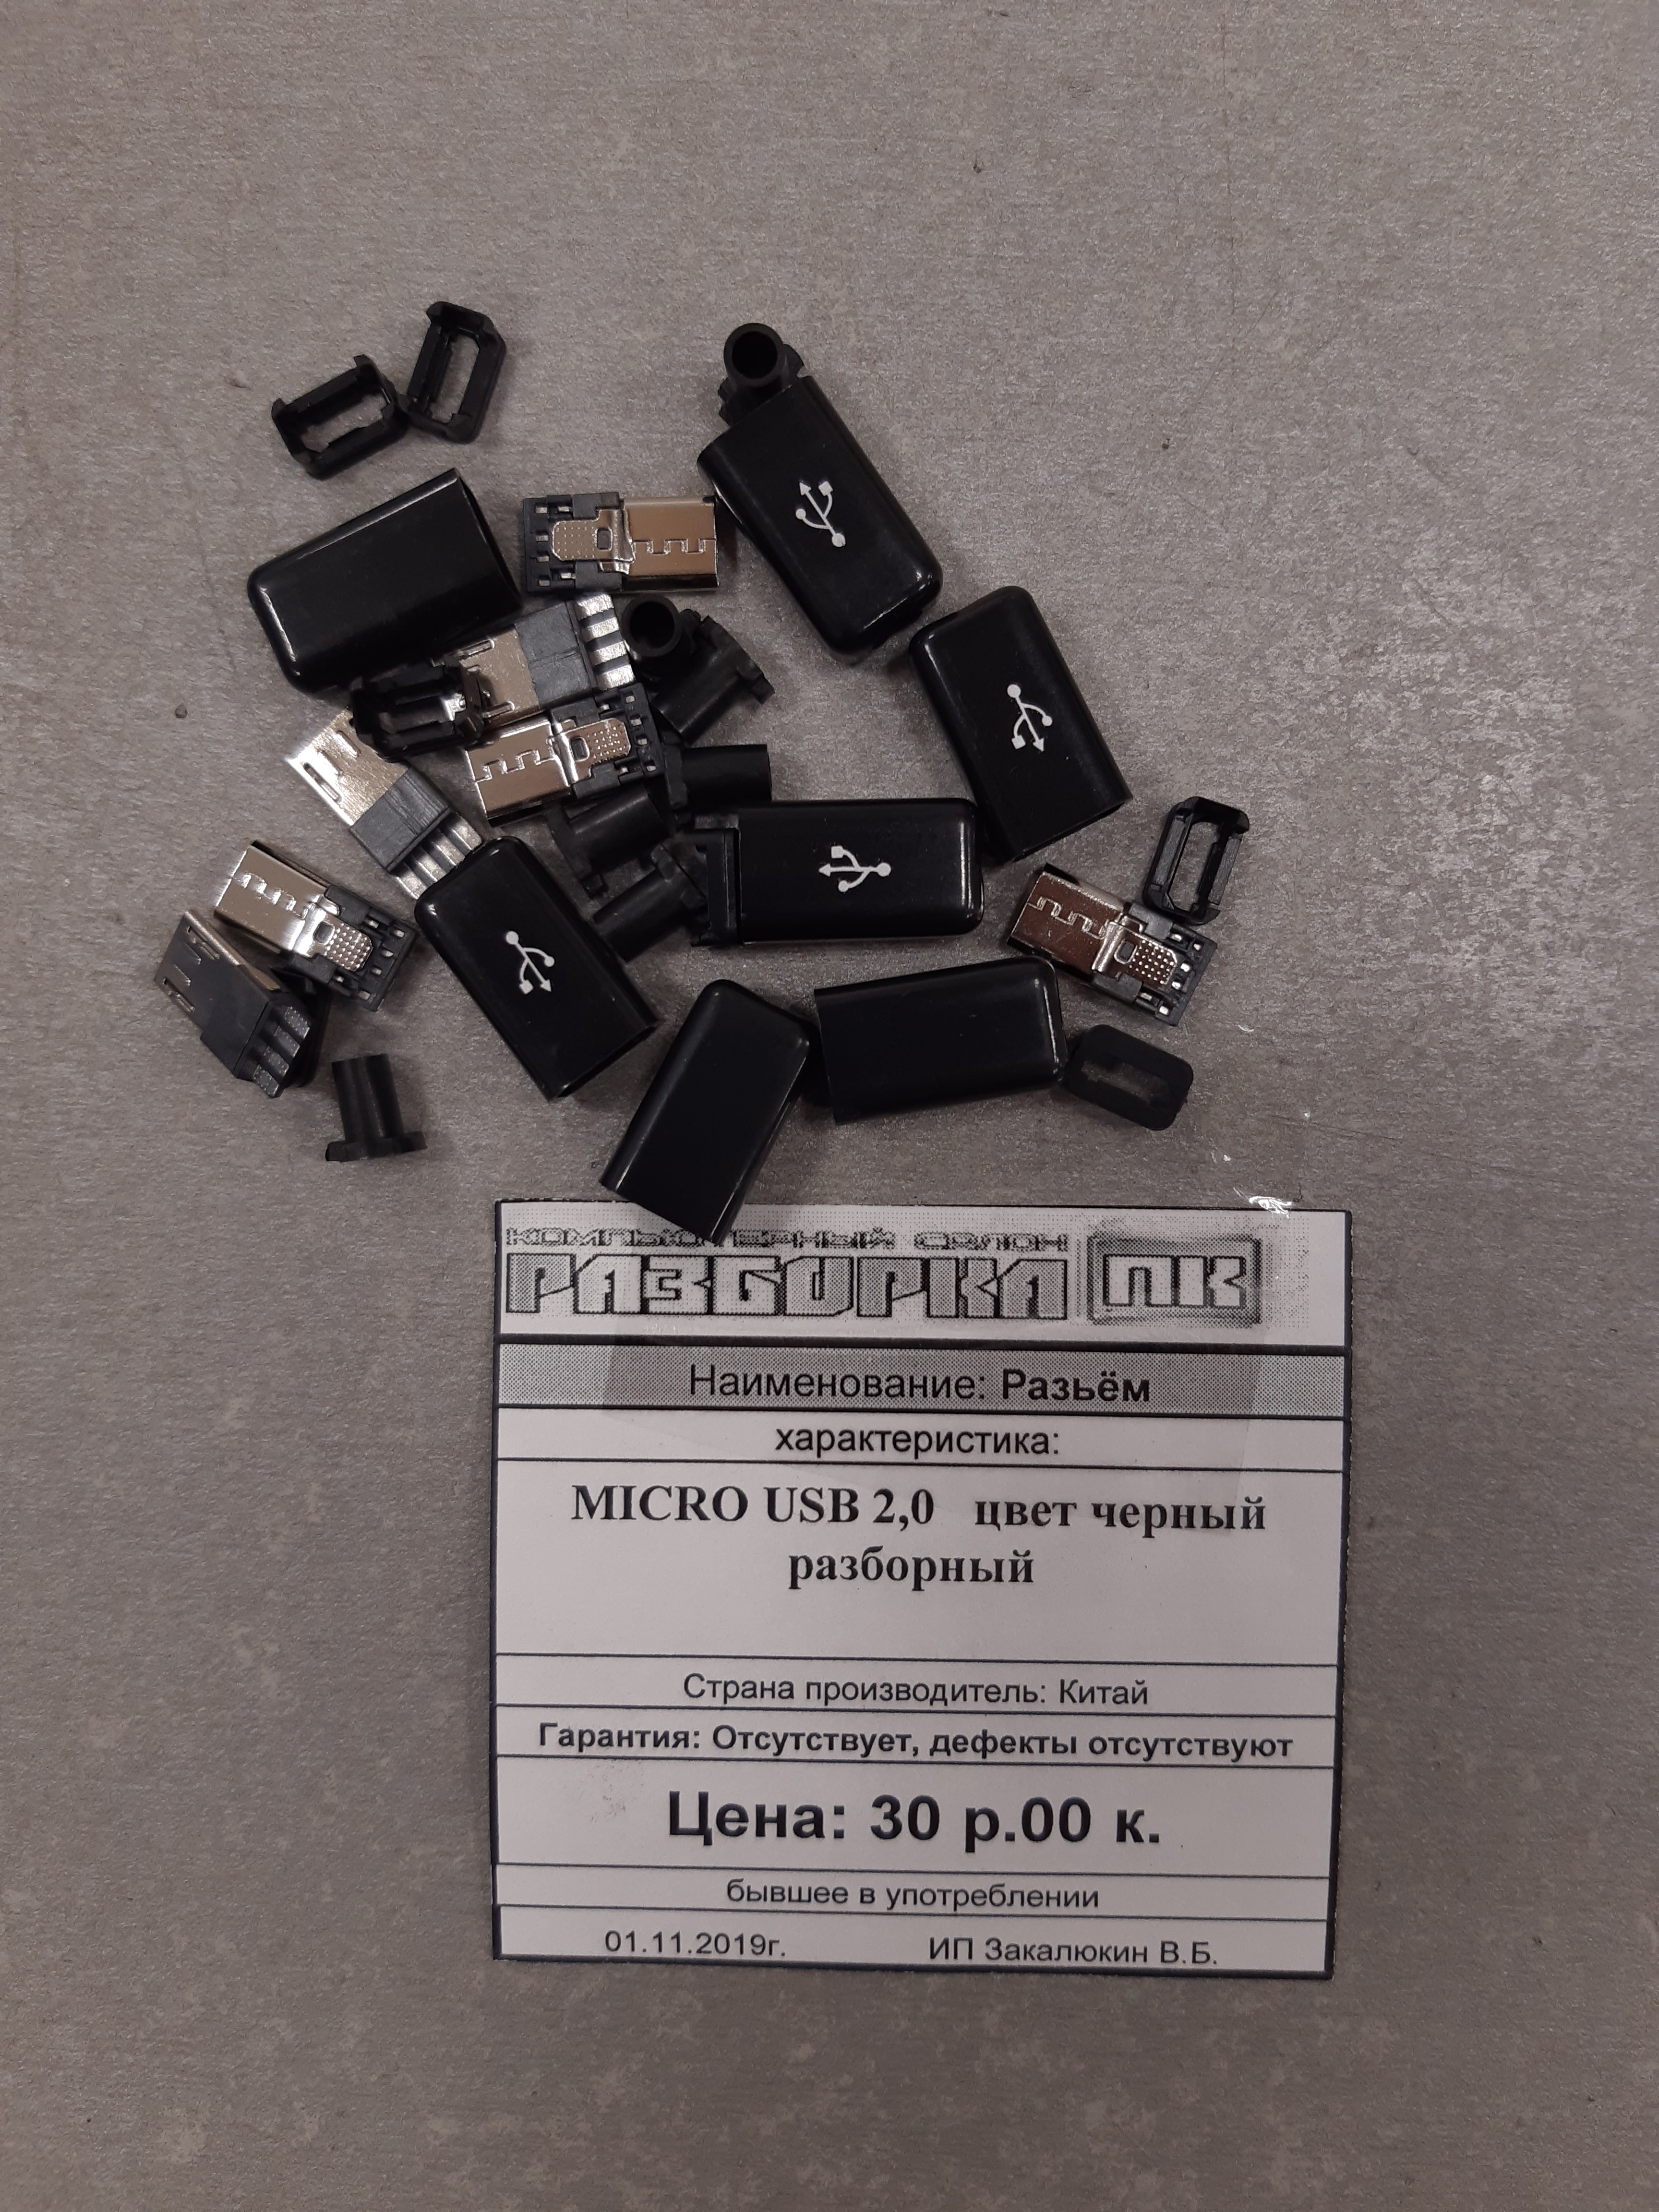 Разъём 	Micro USB 2,0 цвет черный разборный